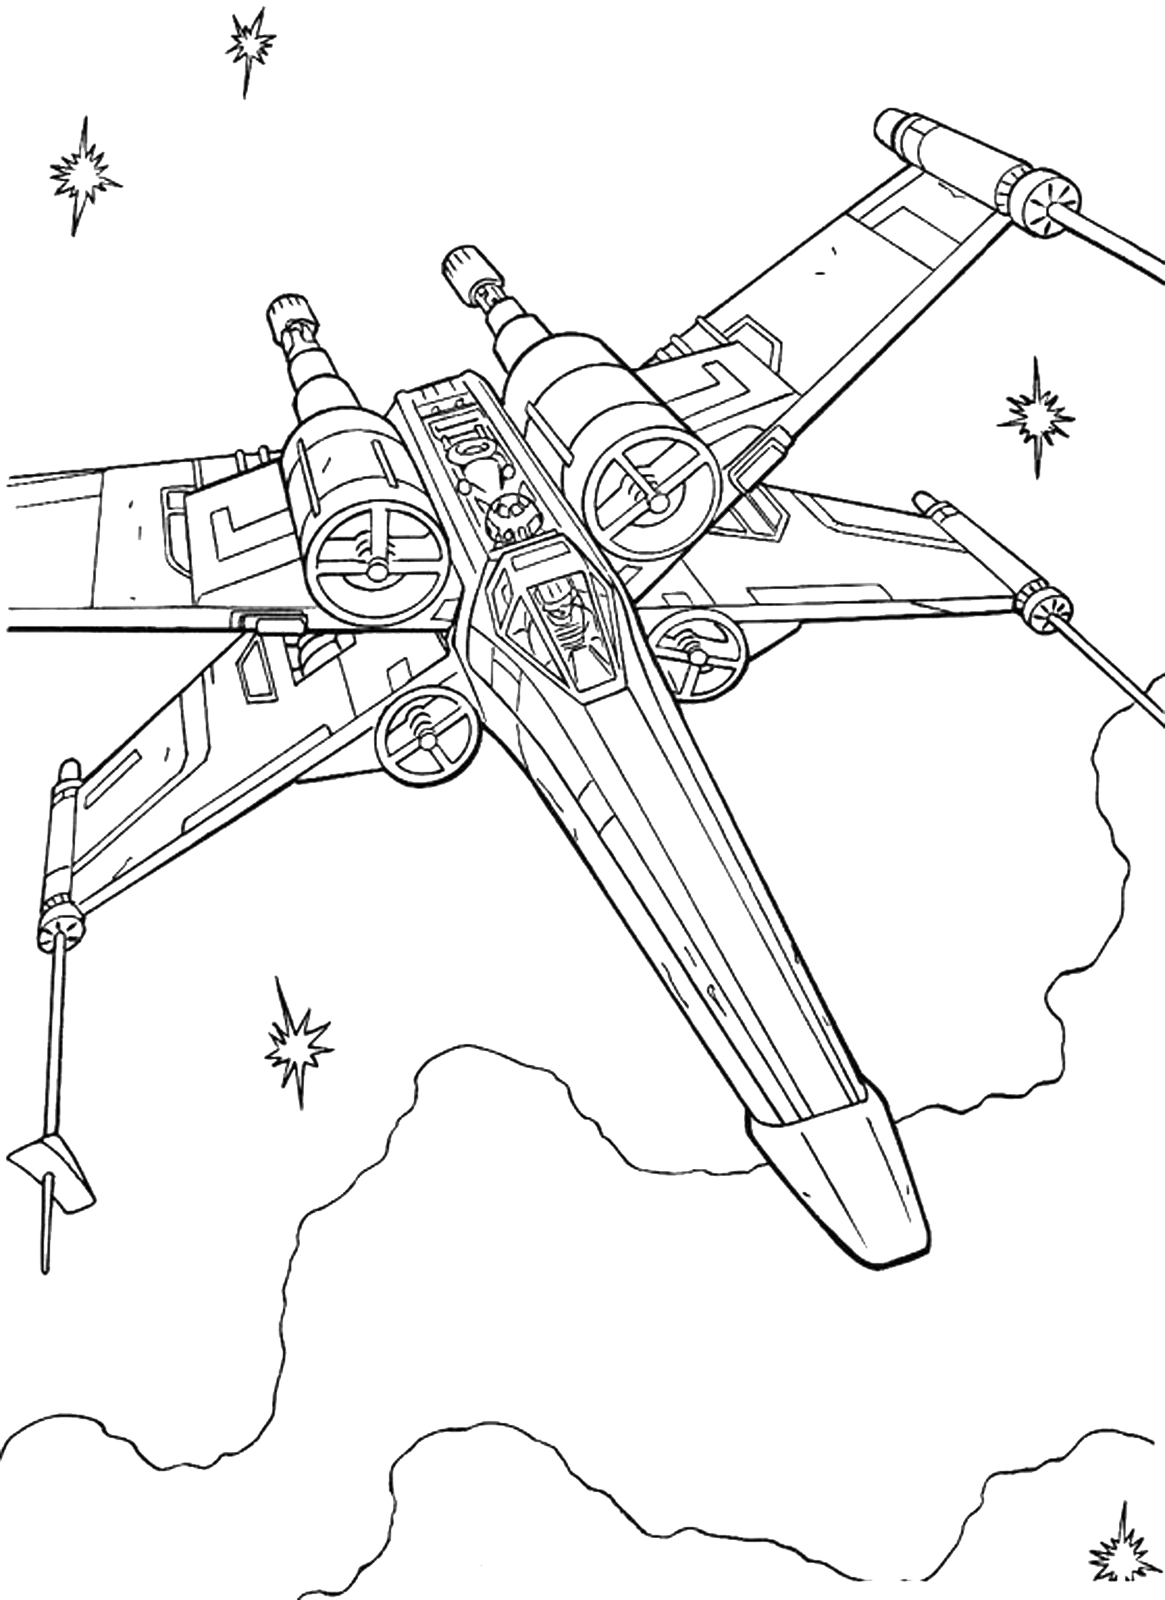 Star Wars - Luke vola nello spazio con l'X-Wing